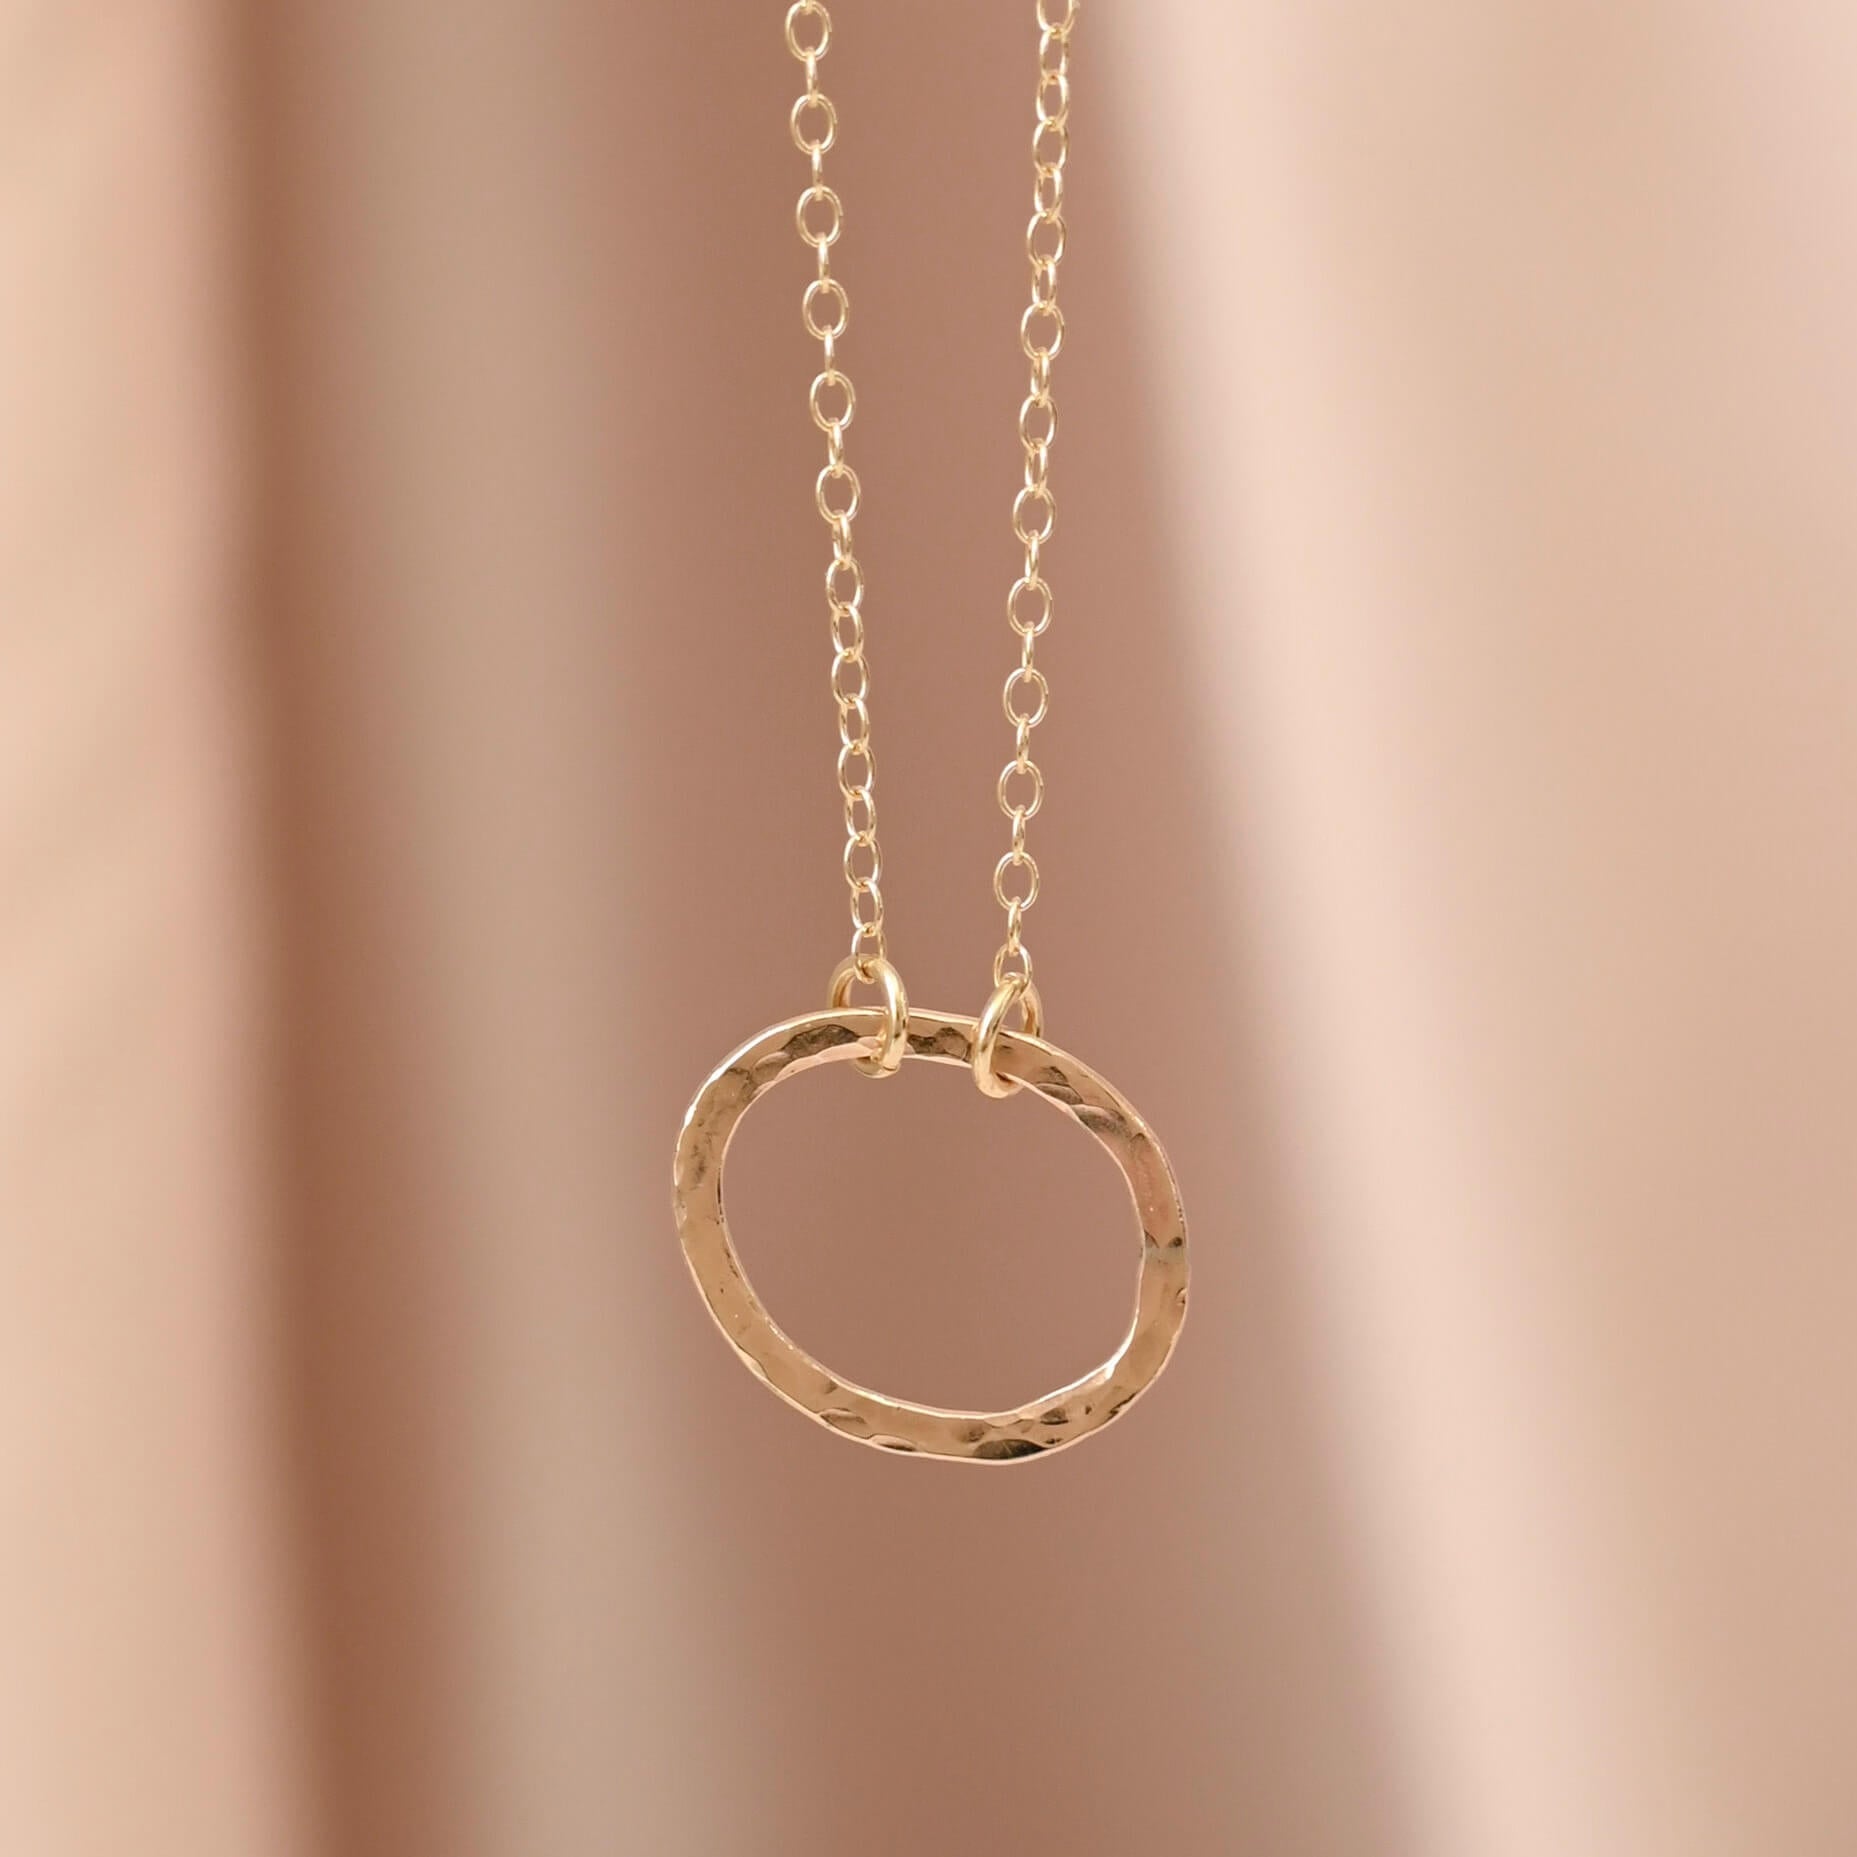 Hammered Gold Pendant Necklace - Drumgreenagh Design Shop